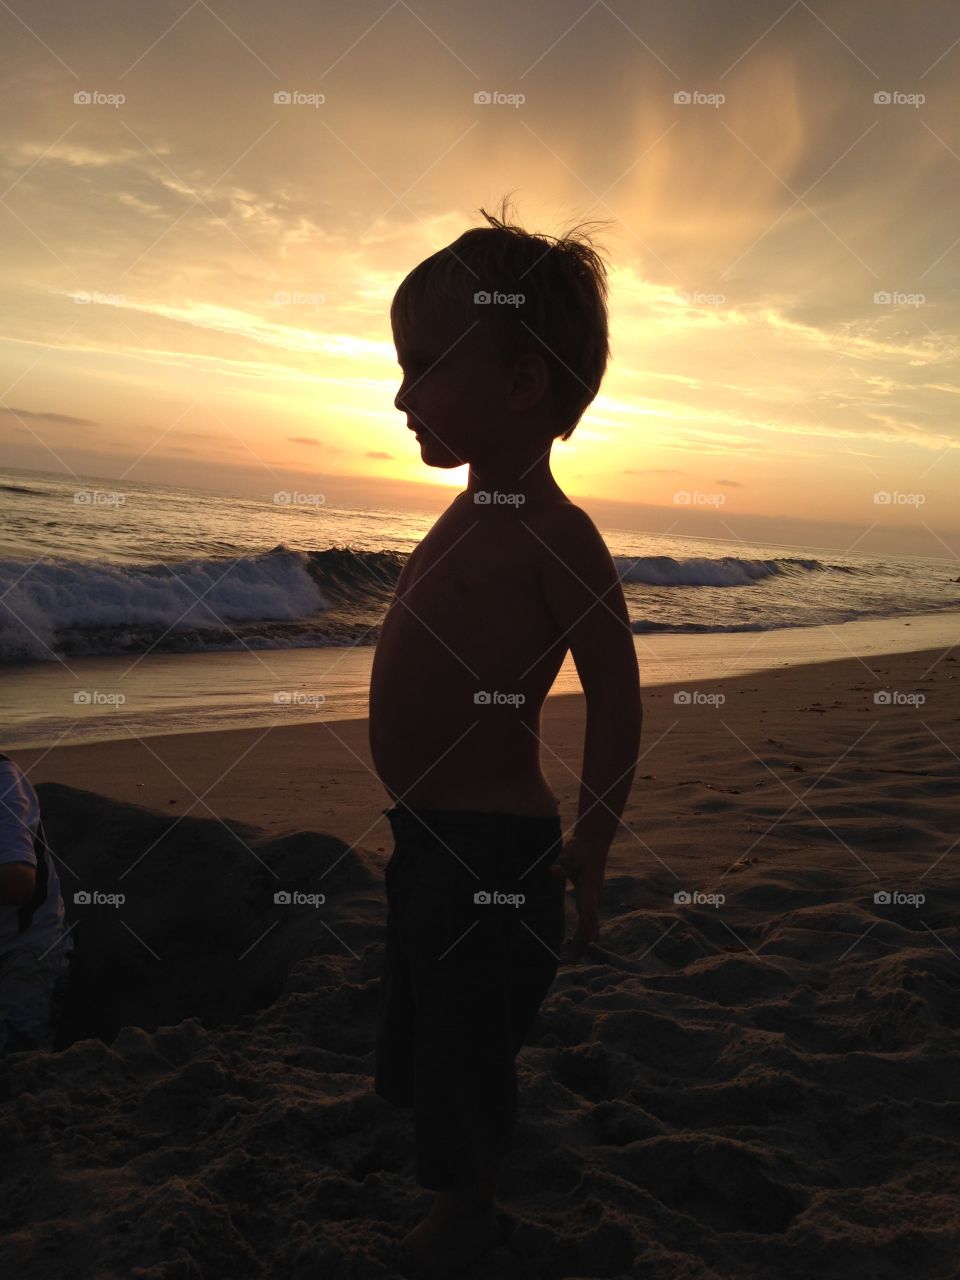 Beach Baby at Sunset